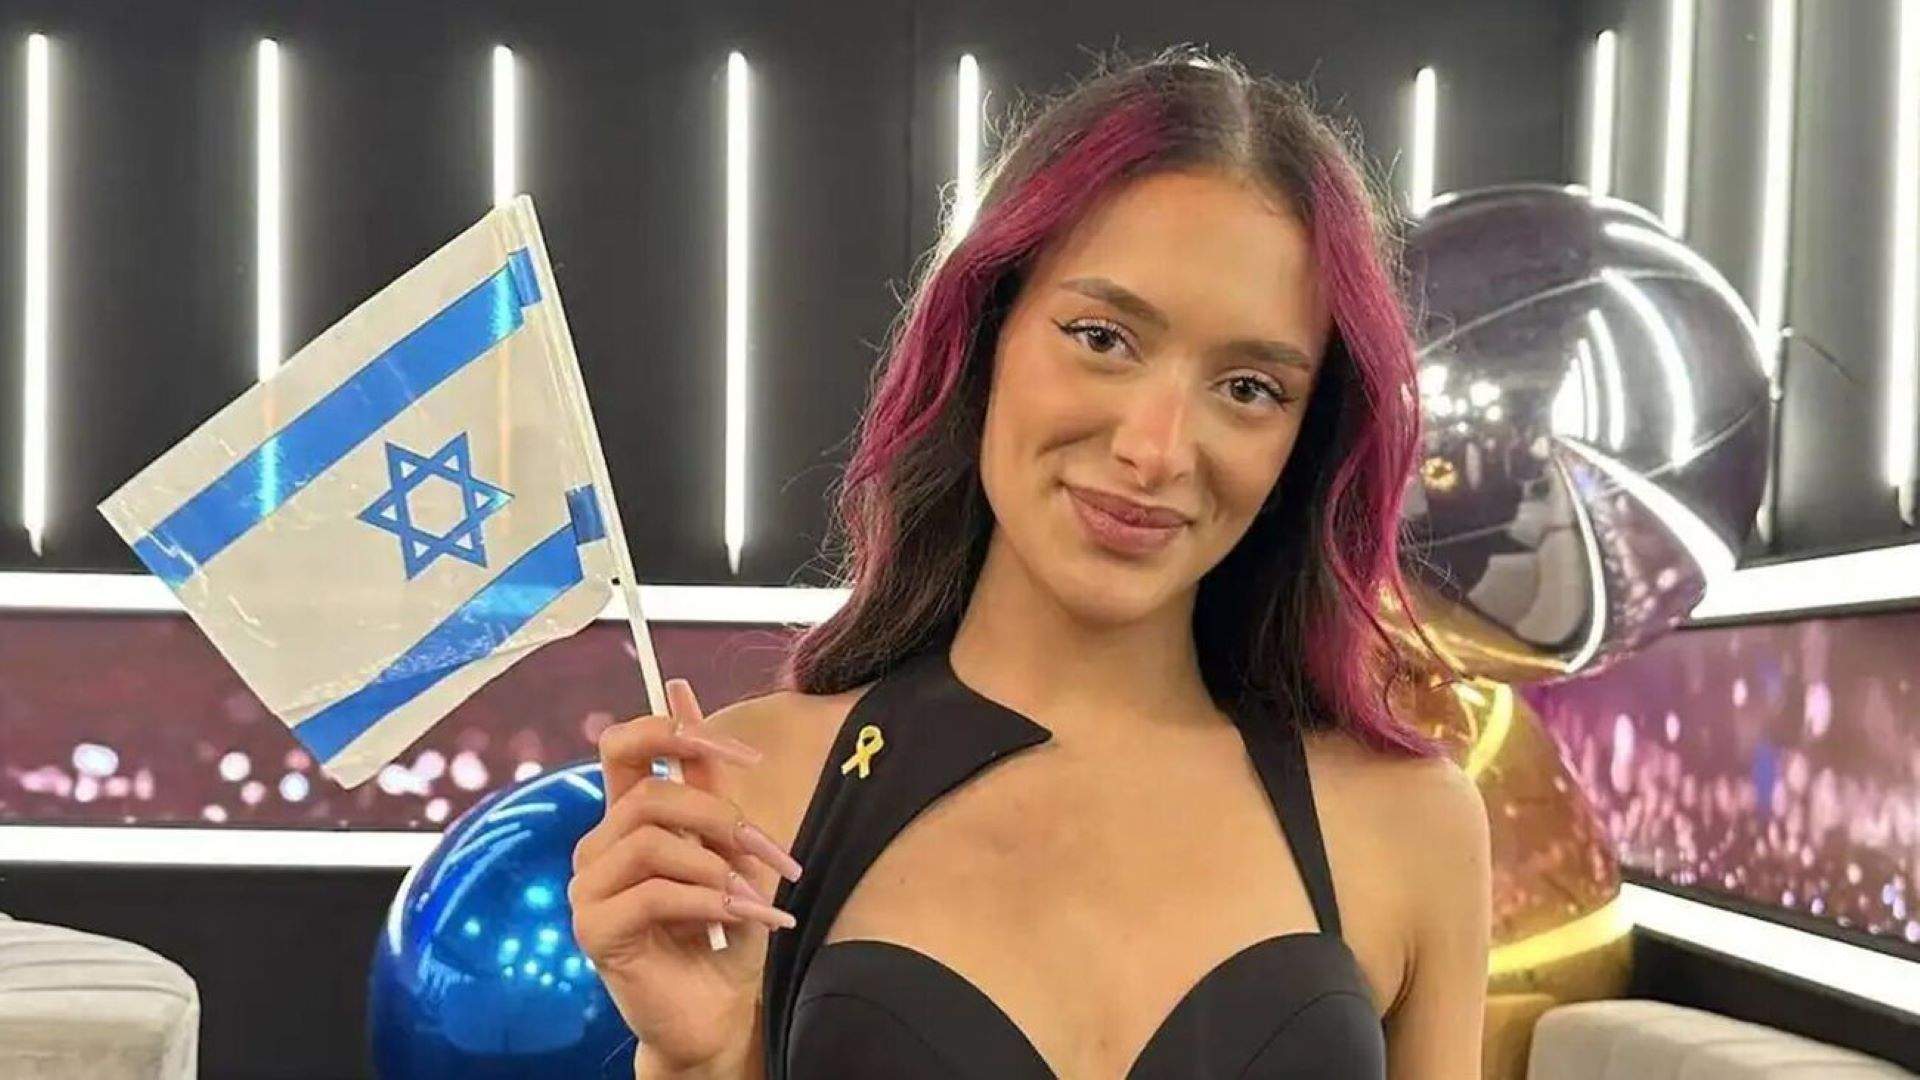 Israel esquiva el veto i participarà a Eurovisió amb 'Hurricane', una cançó sense contingut polític